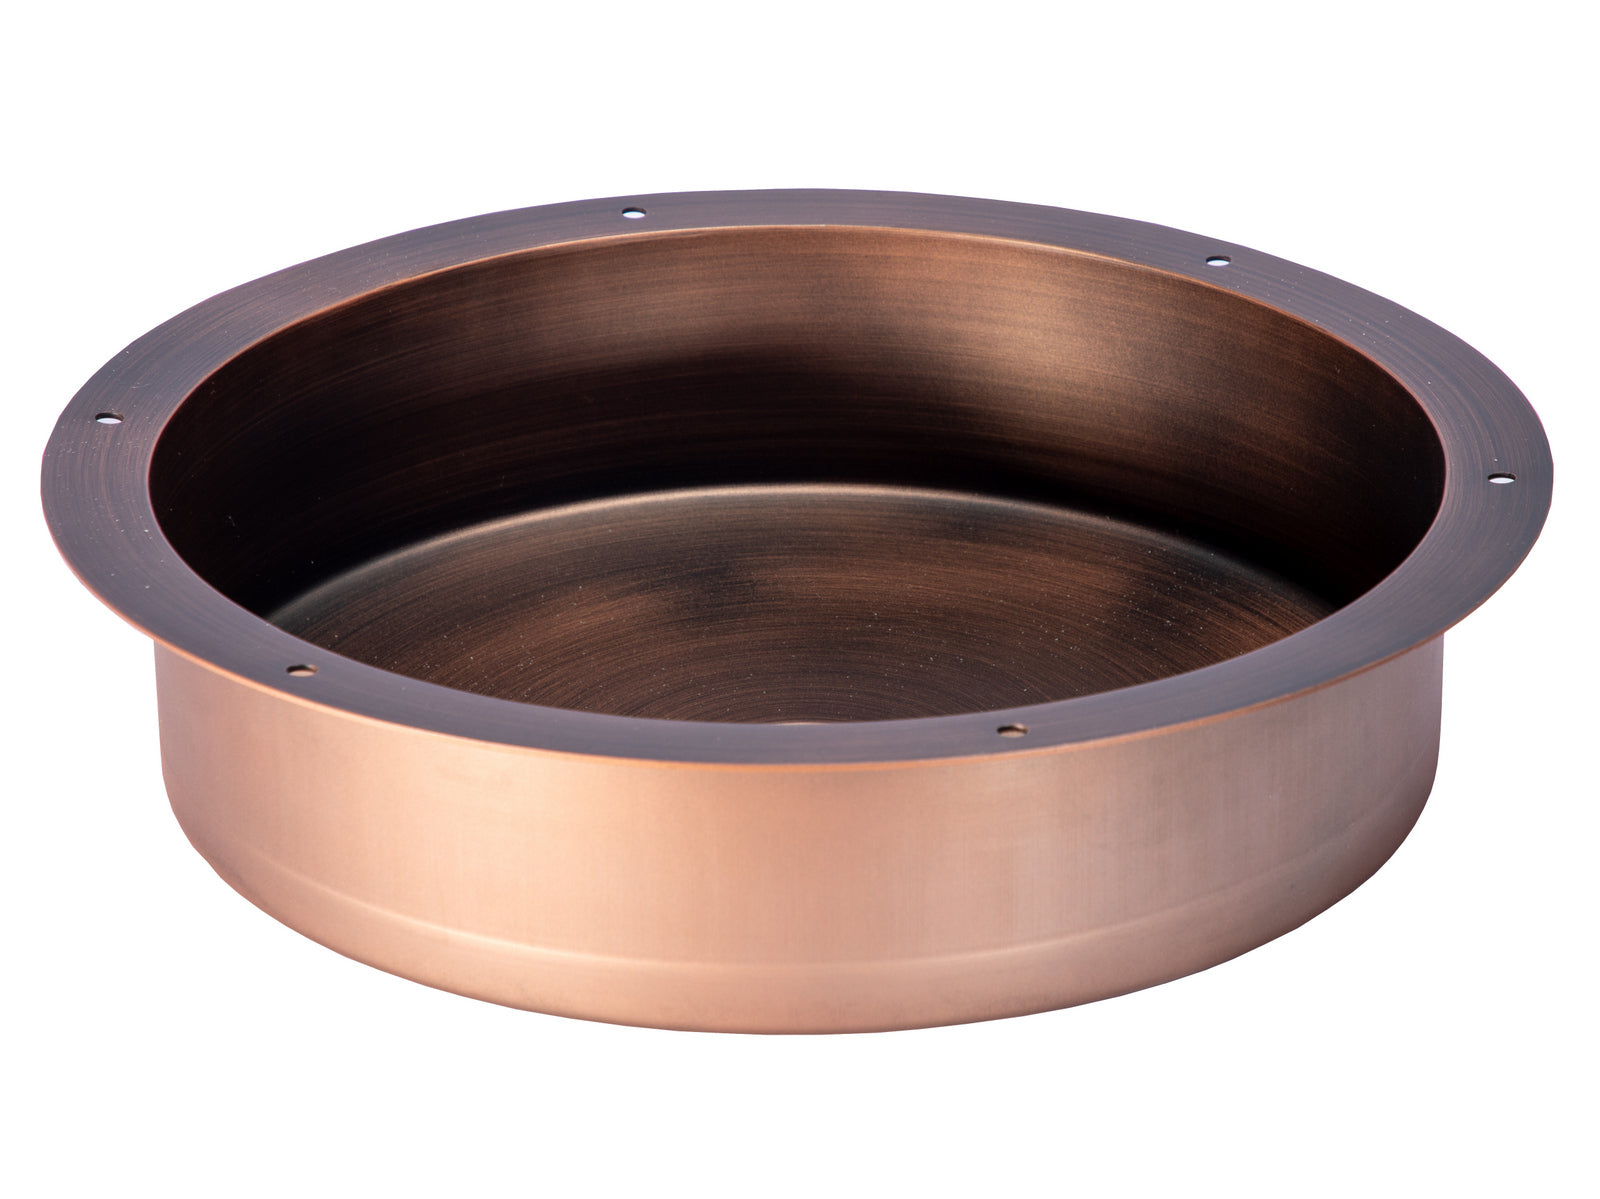 15" Round Stainless Steel Undermount Bathroom Sink with Drain in Bronze